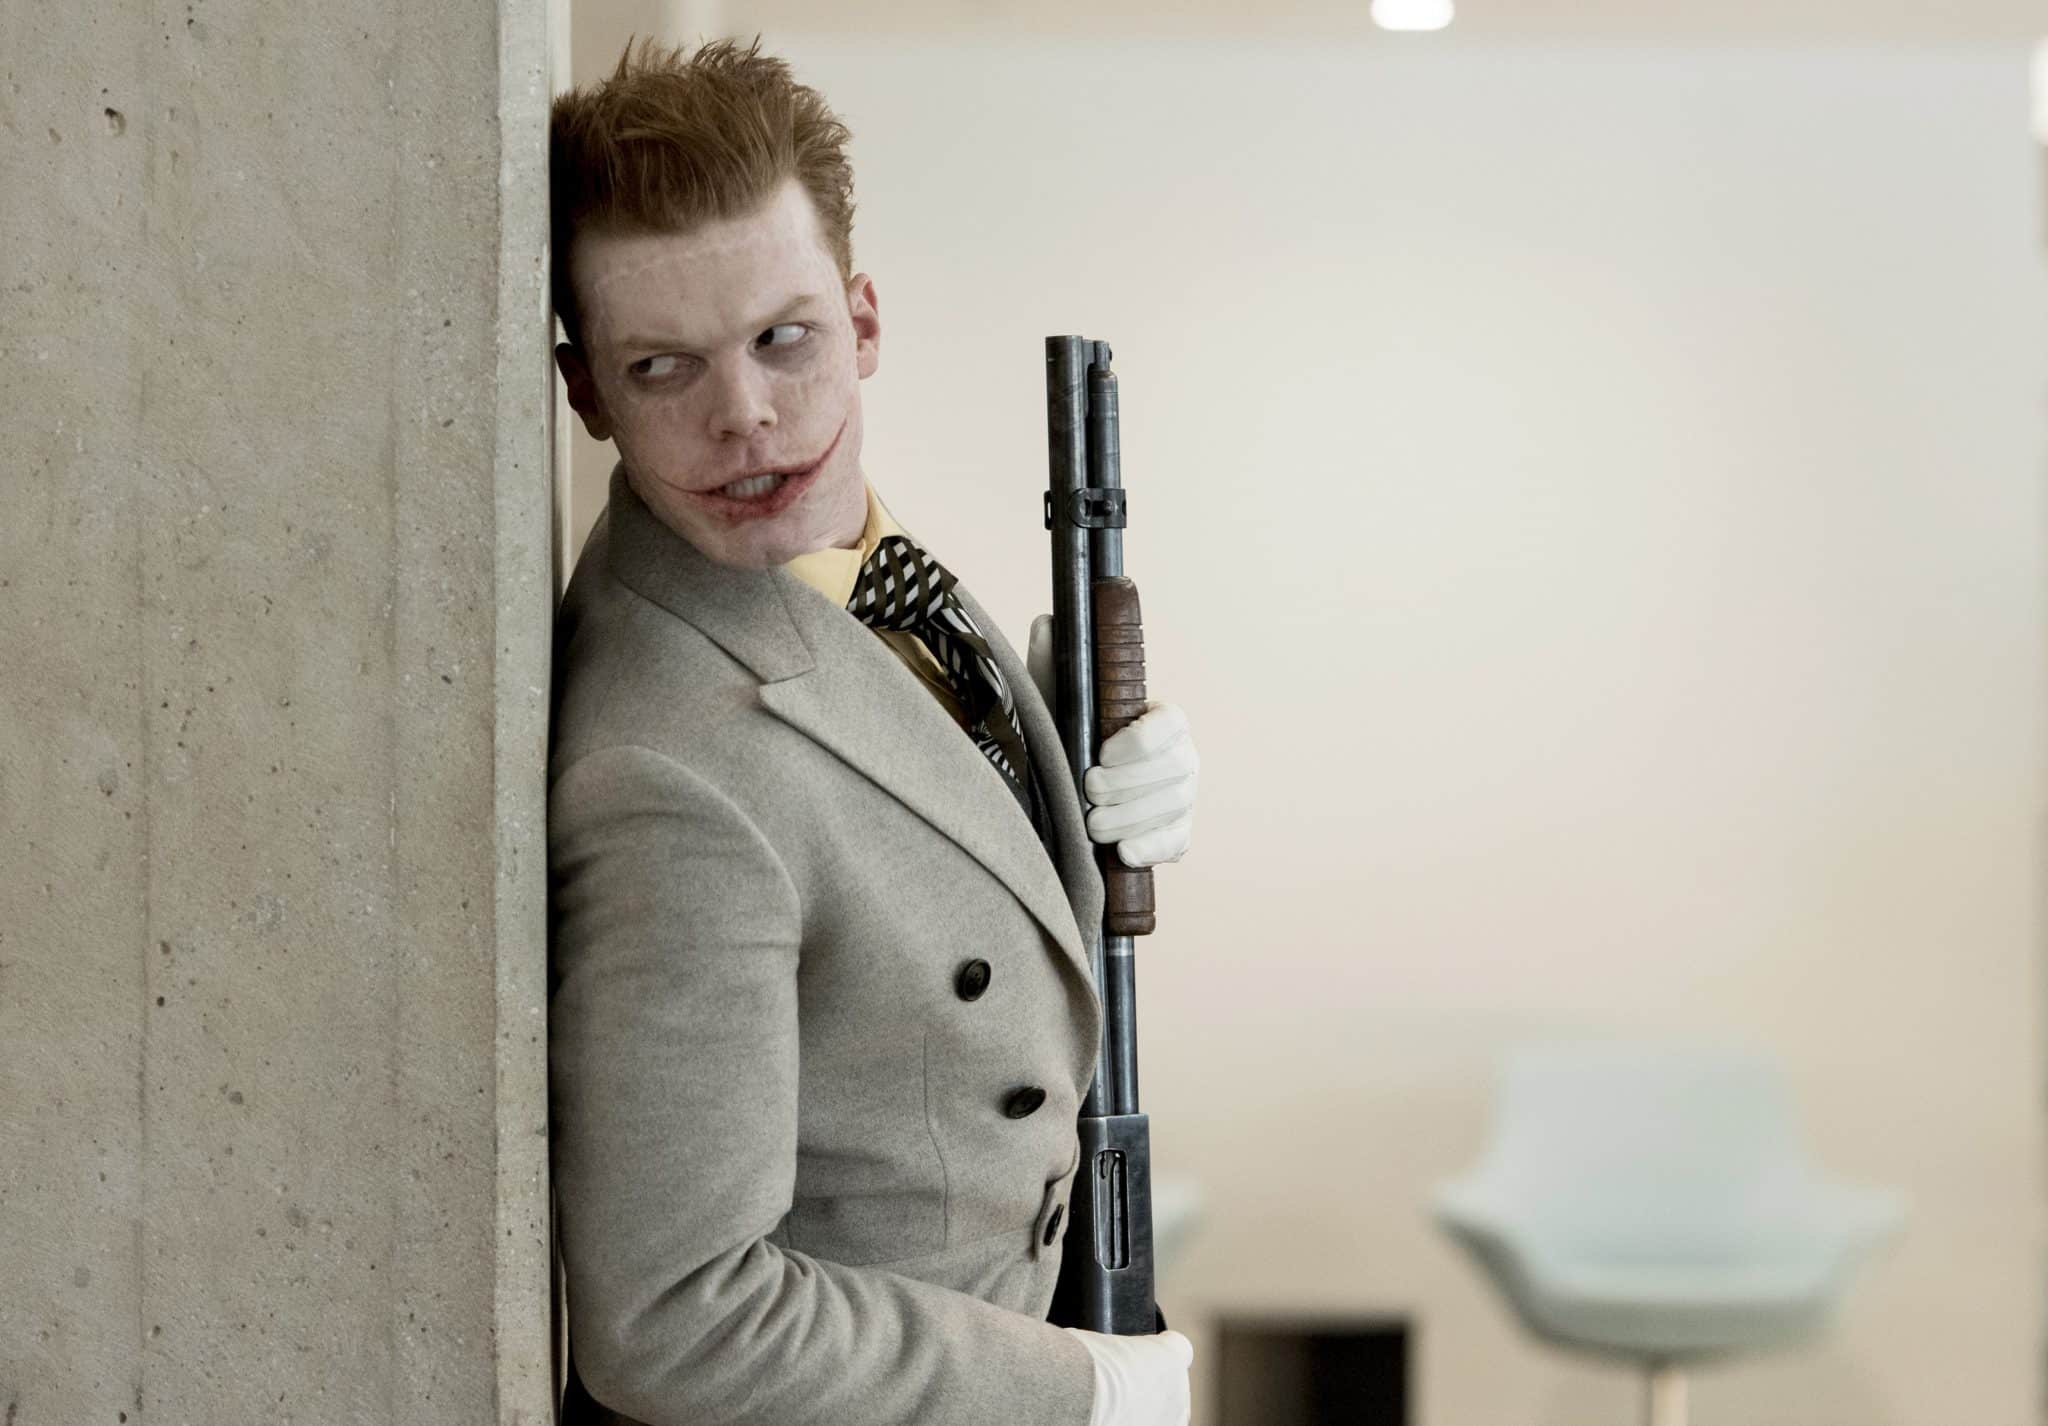 Jokerov príchod do Gothamu